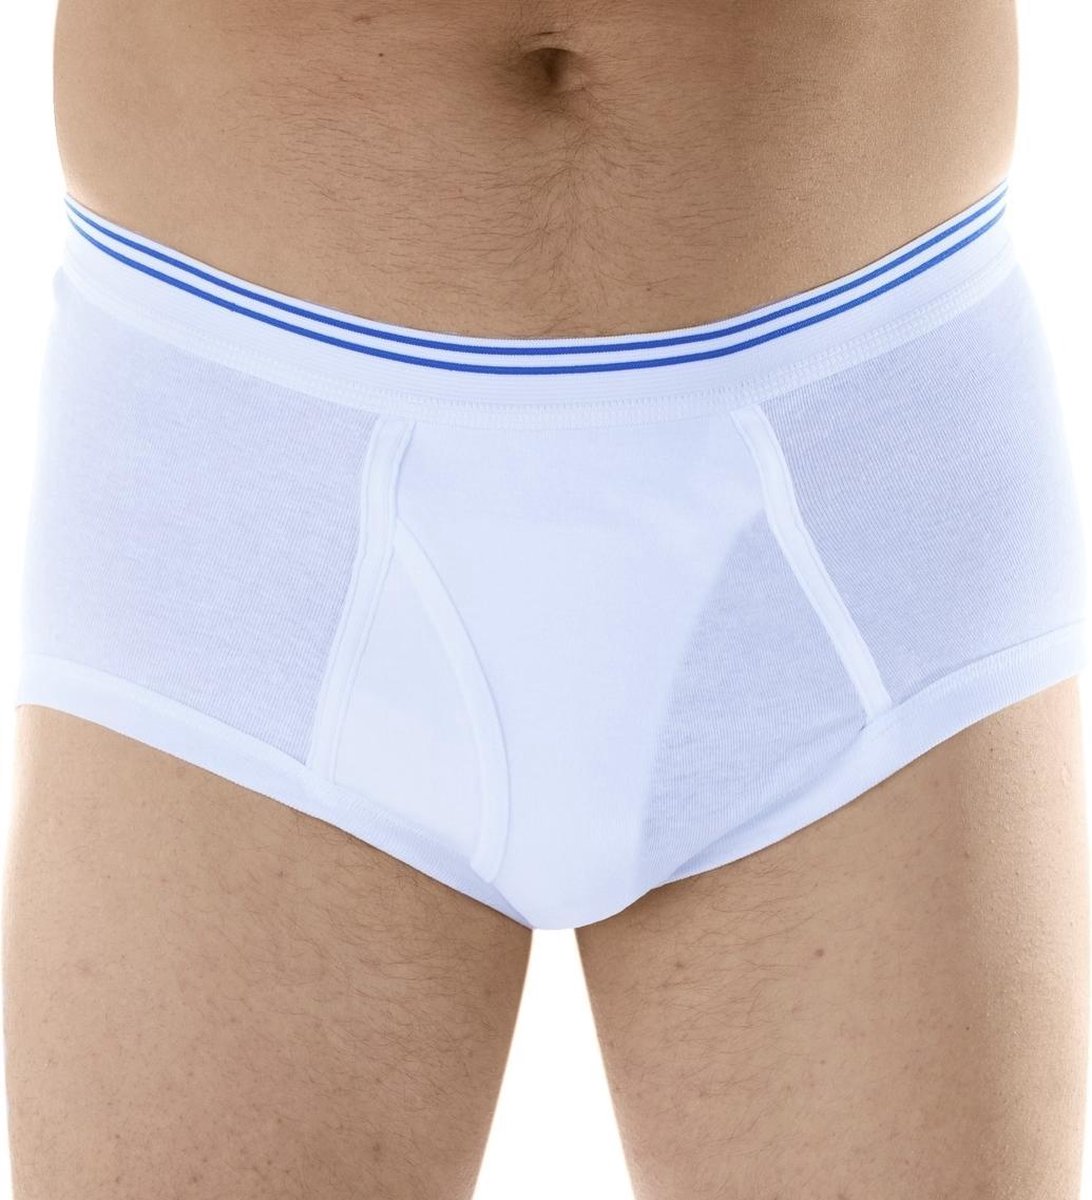 Wasbare Incontinentie Onderbroek Man - Maat S - Heren ondergoed | bol.com